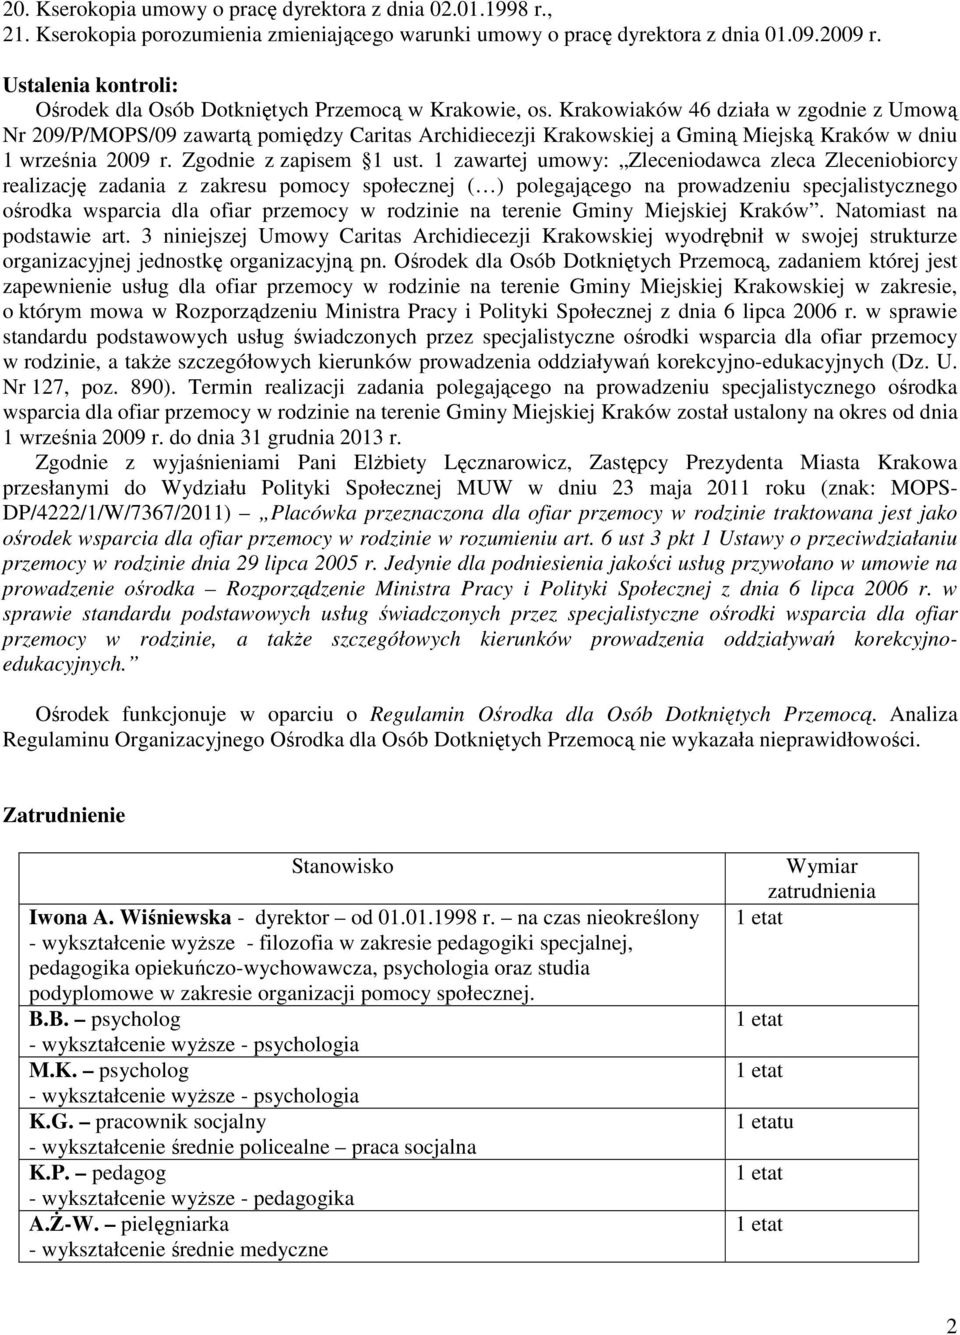 Krakowiaków 46 działa w zgodnie z Umową Nr 209/P/MOPS/09 zawartą pomiędzy Caritas Archidiecezji Krakowskiej a Gminą Miejską Kraków w dniu 1 września 2009 r. Zgodnie z zapisem 1 ust.